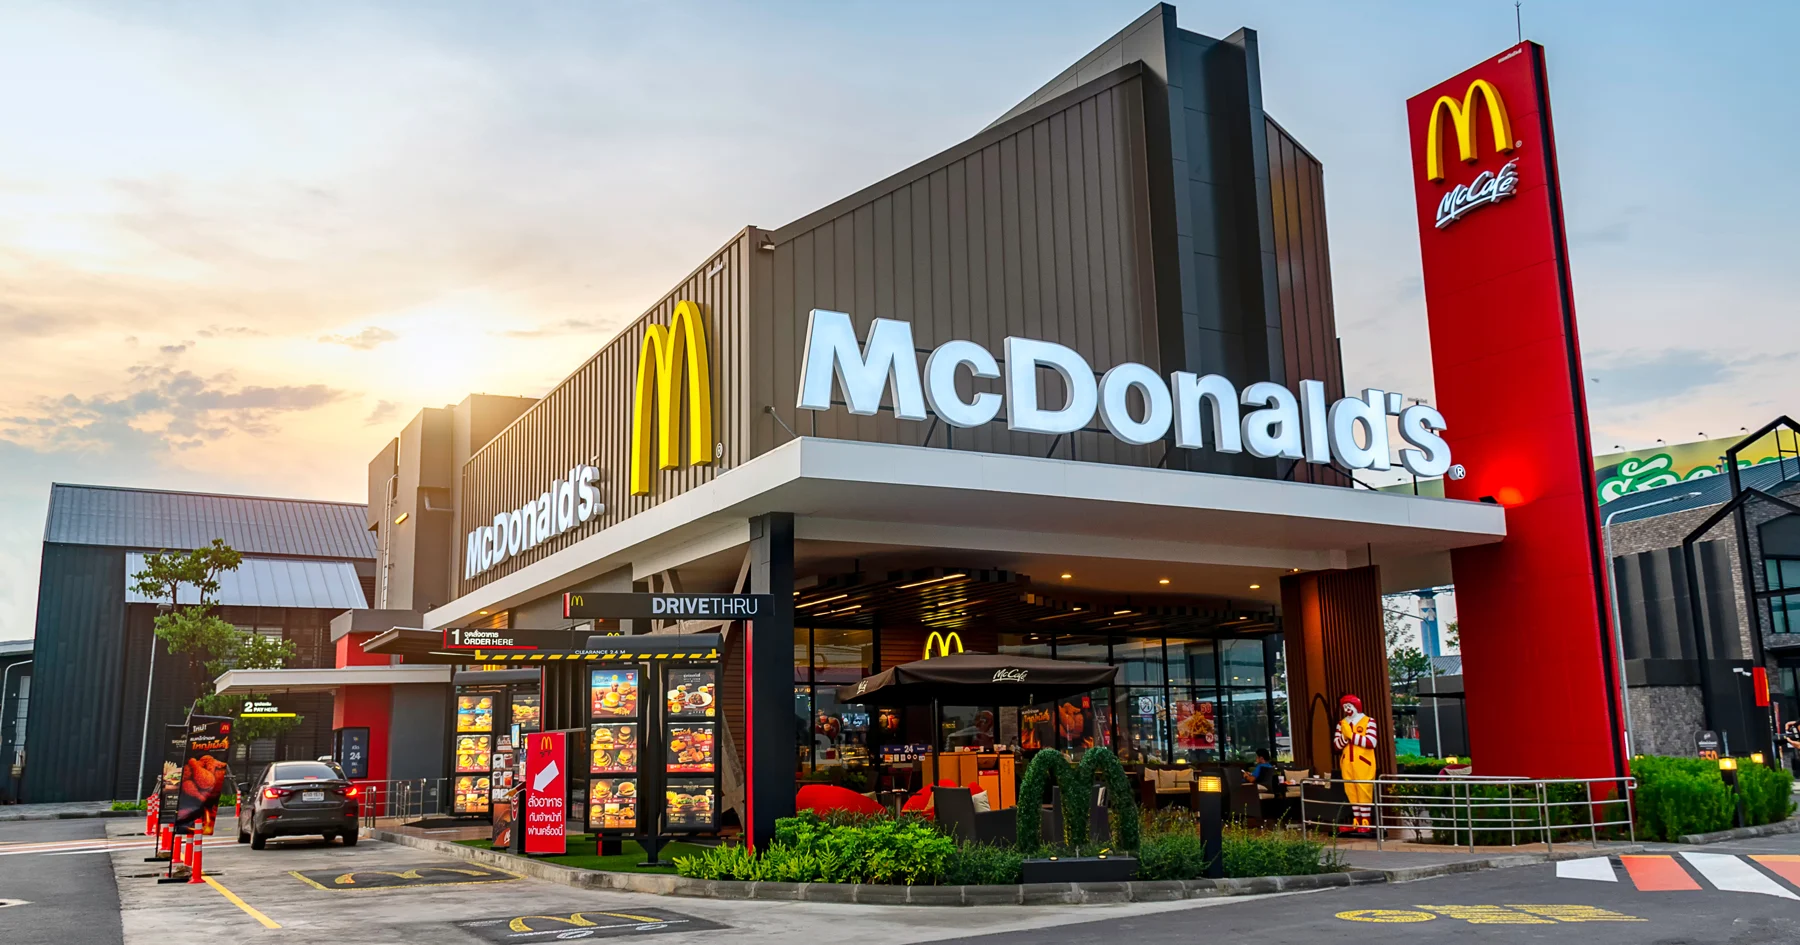 McDonald’s Türkiye satıldı